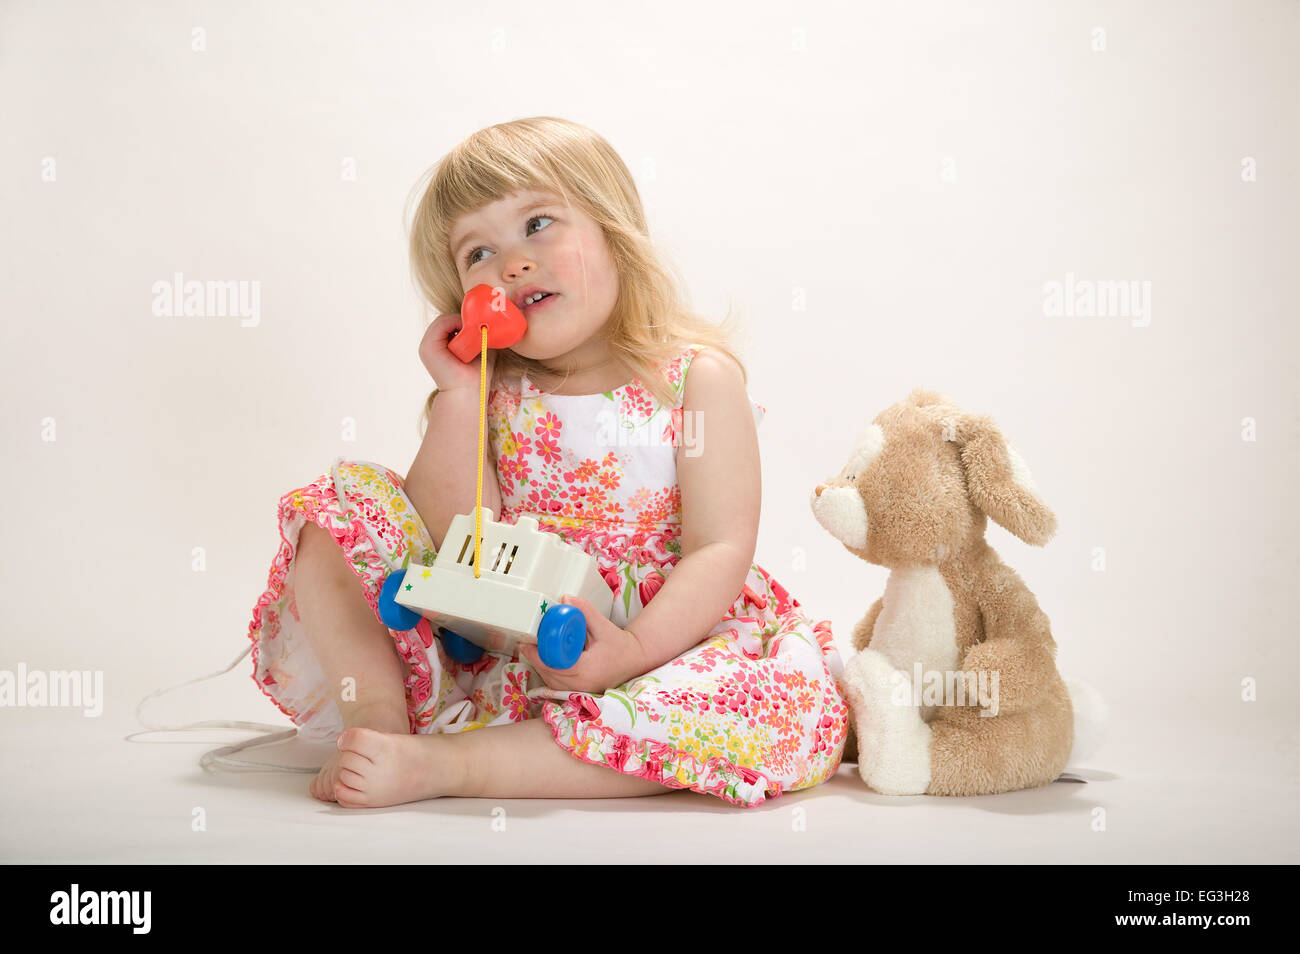 Bébé fille (2,5 ans) jouer, parler sur un jouet téléphone. Concepts : l'ennui, la lassitude, l'imagination, faire-croire Banque D'Images